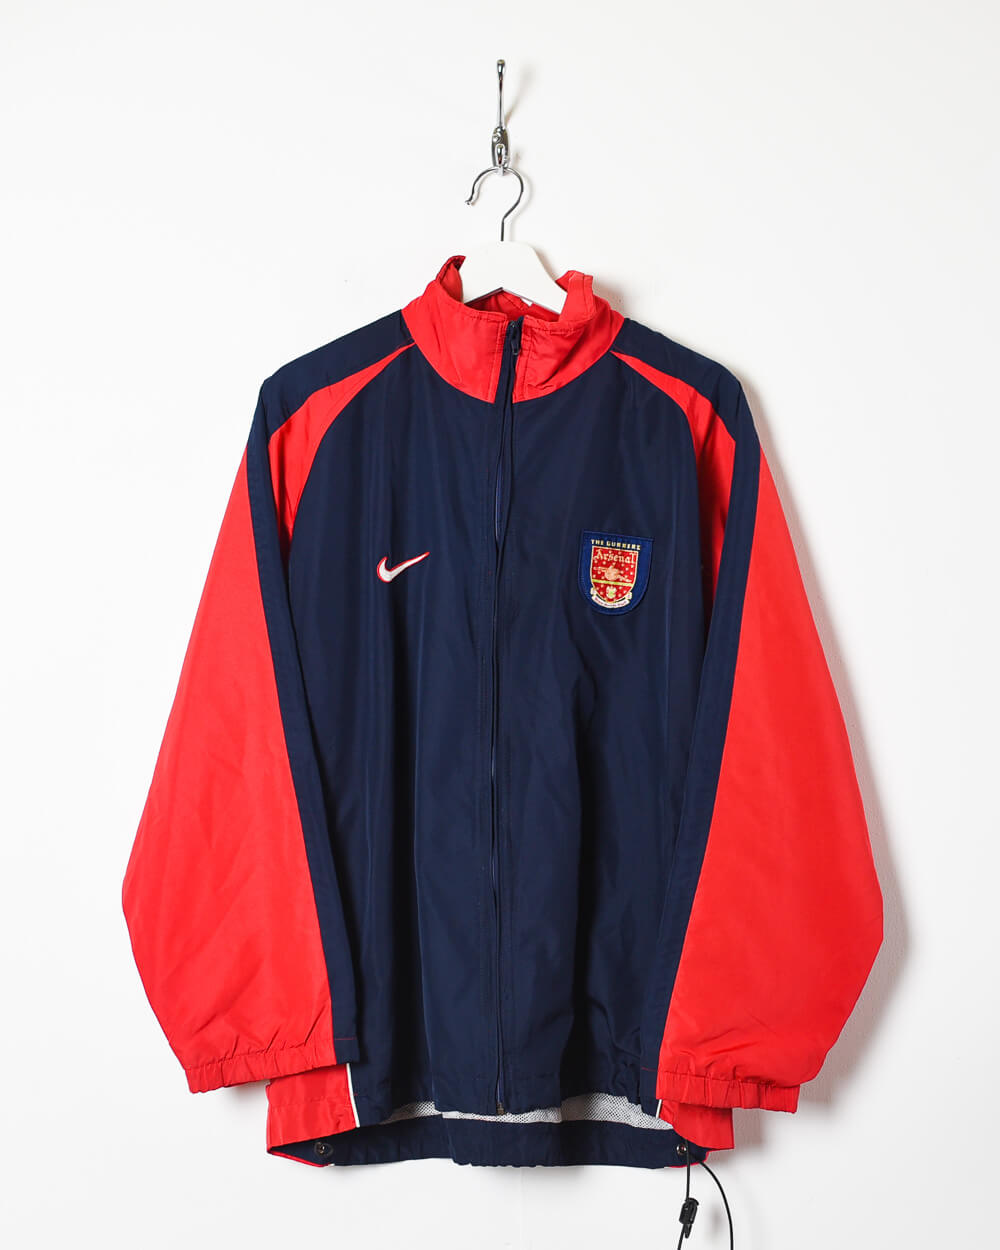 Navy Nike 90s Arsenal FC Training Jacket - Large